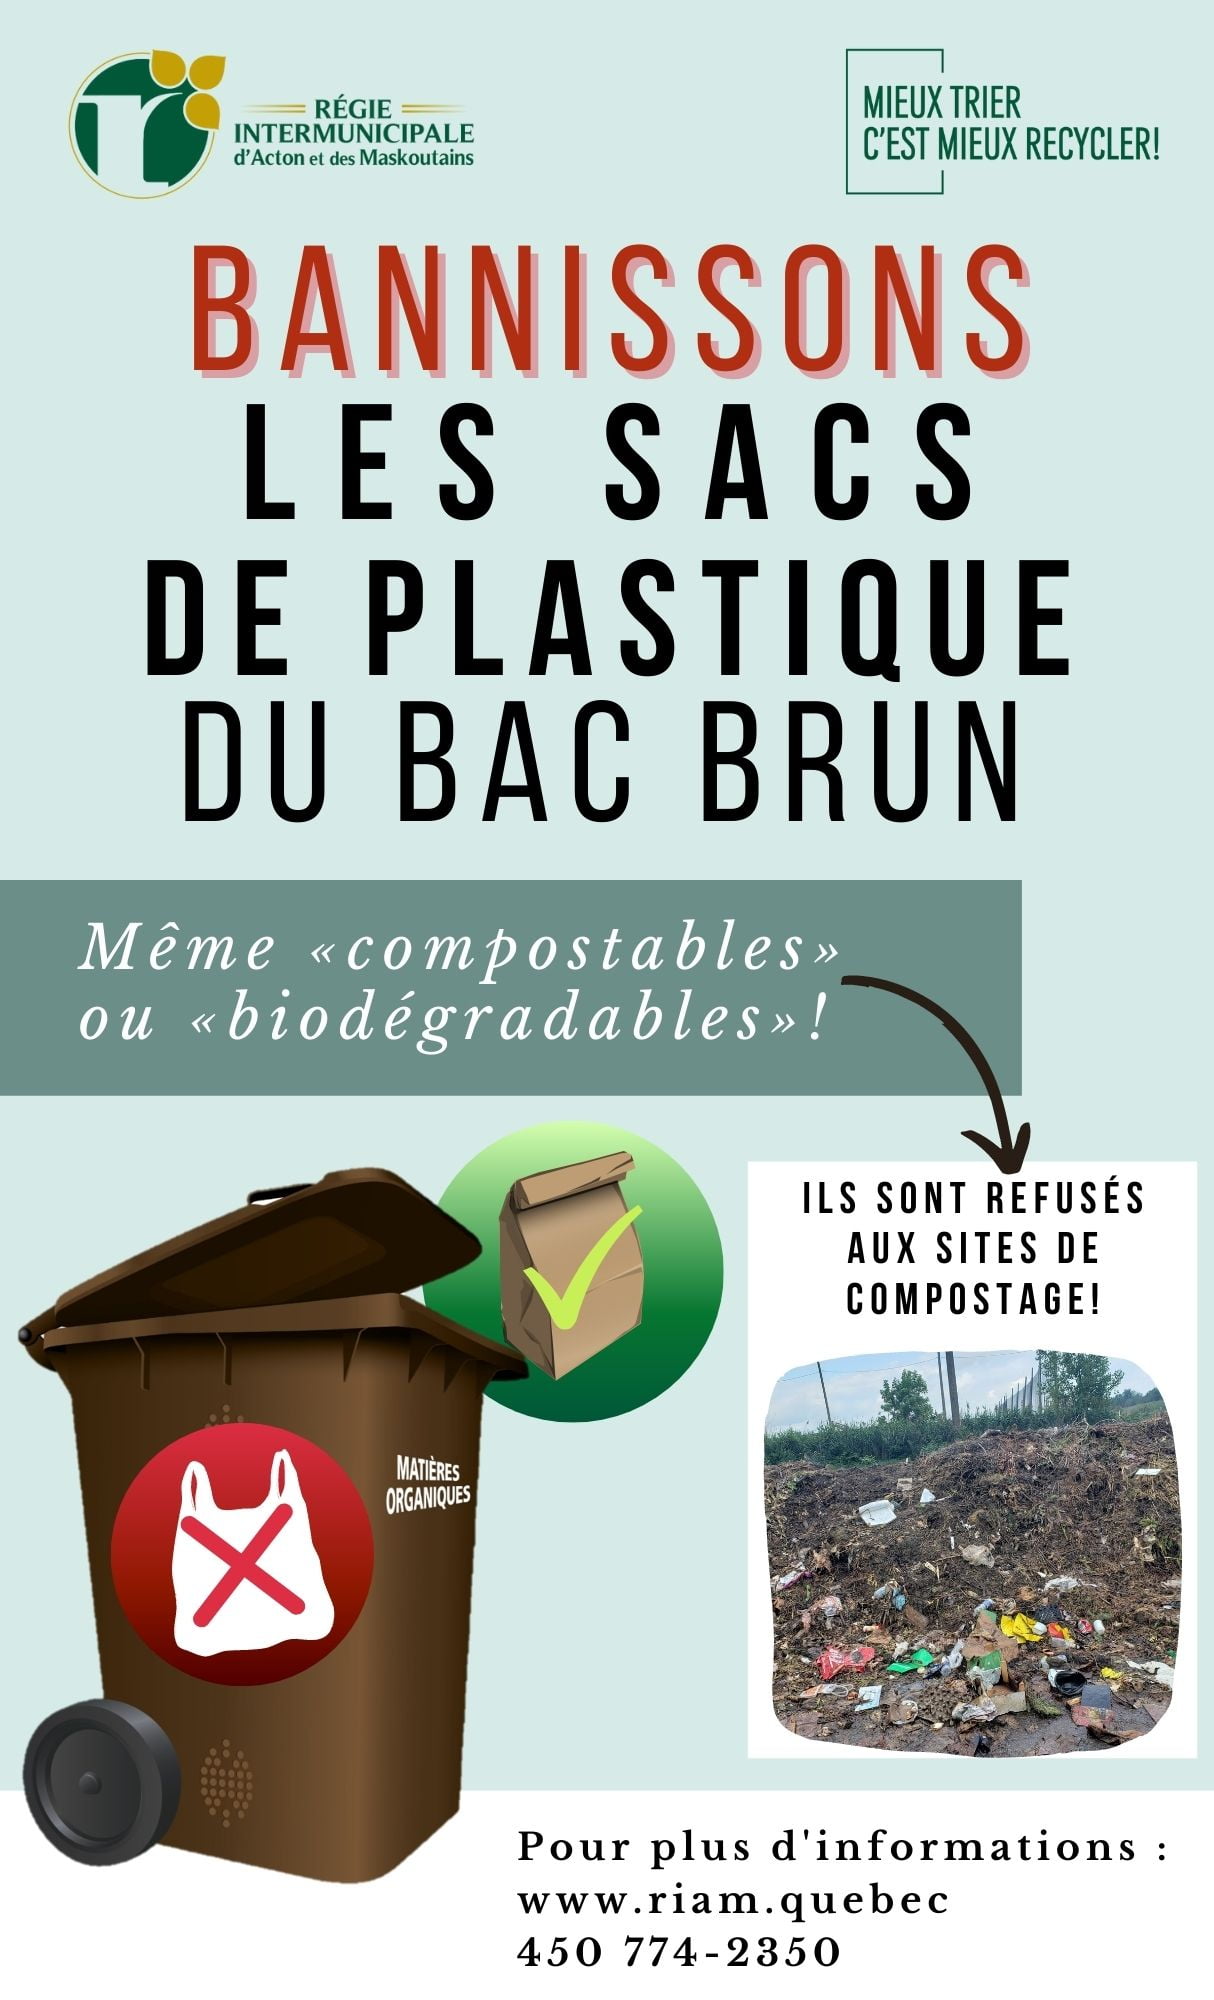 Bannissons les sacs de plastique des bacs bruns